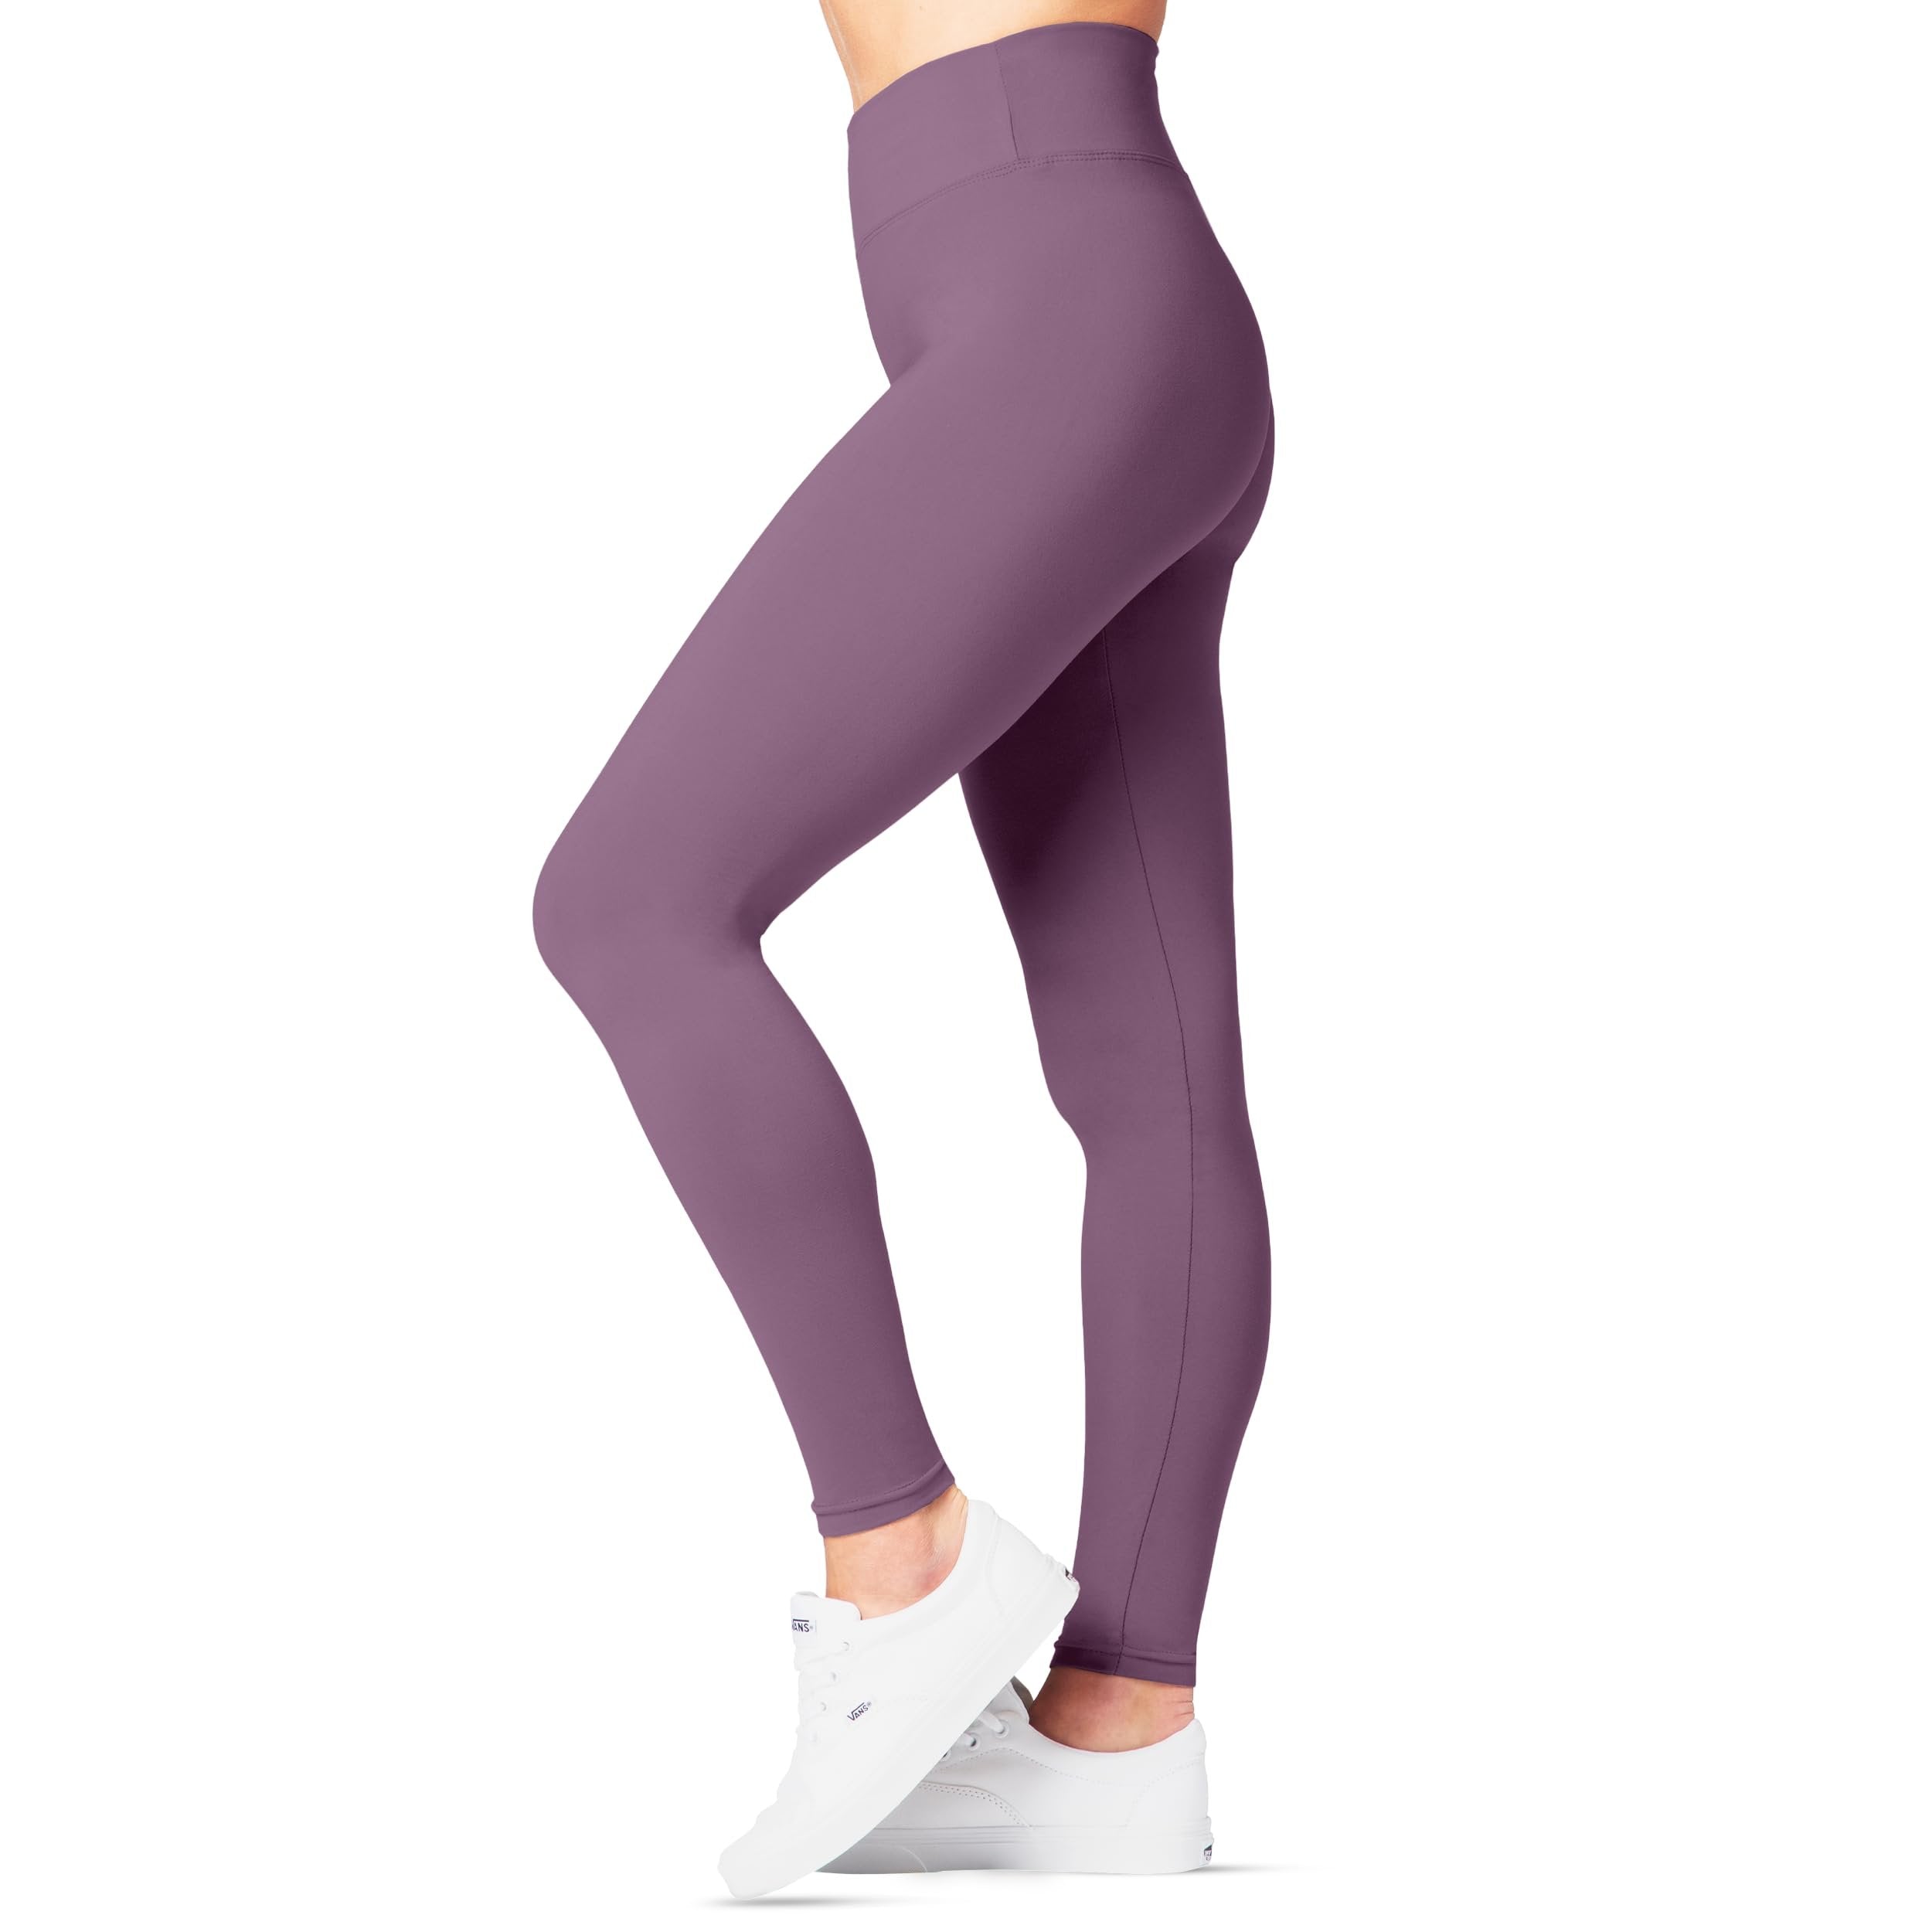 SATINA High Waisted Capri Leggings for Women - Capri Leggings for Women - High Waist for Tummy Control - Lavender Capri Leggings for |3 Inch Waistband (One Size, Lavender)